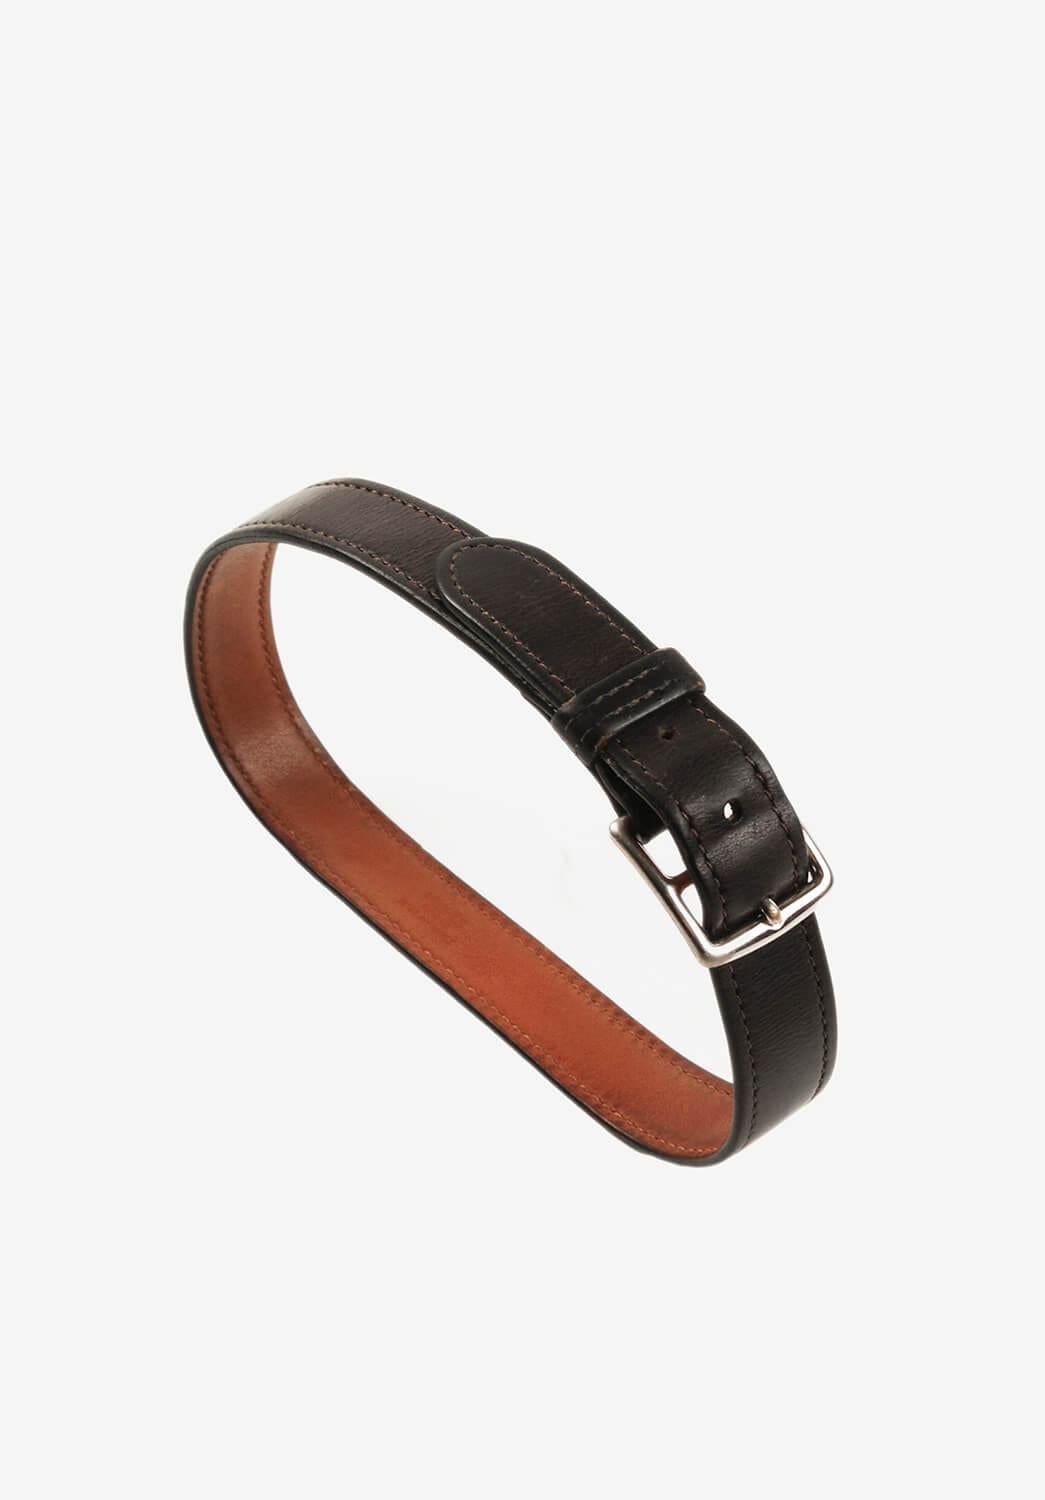 Black Hermes Leather bracelet Men / Women Unisex